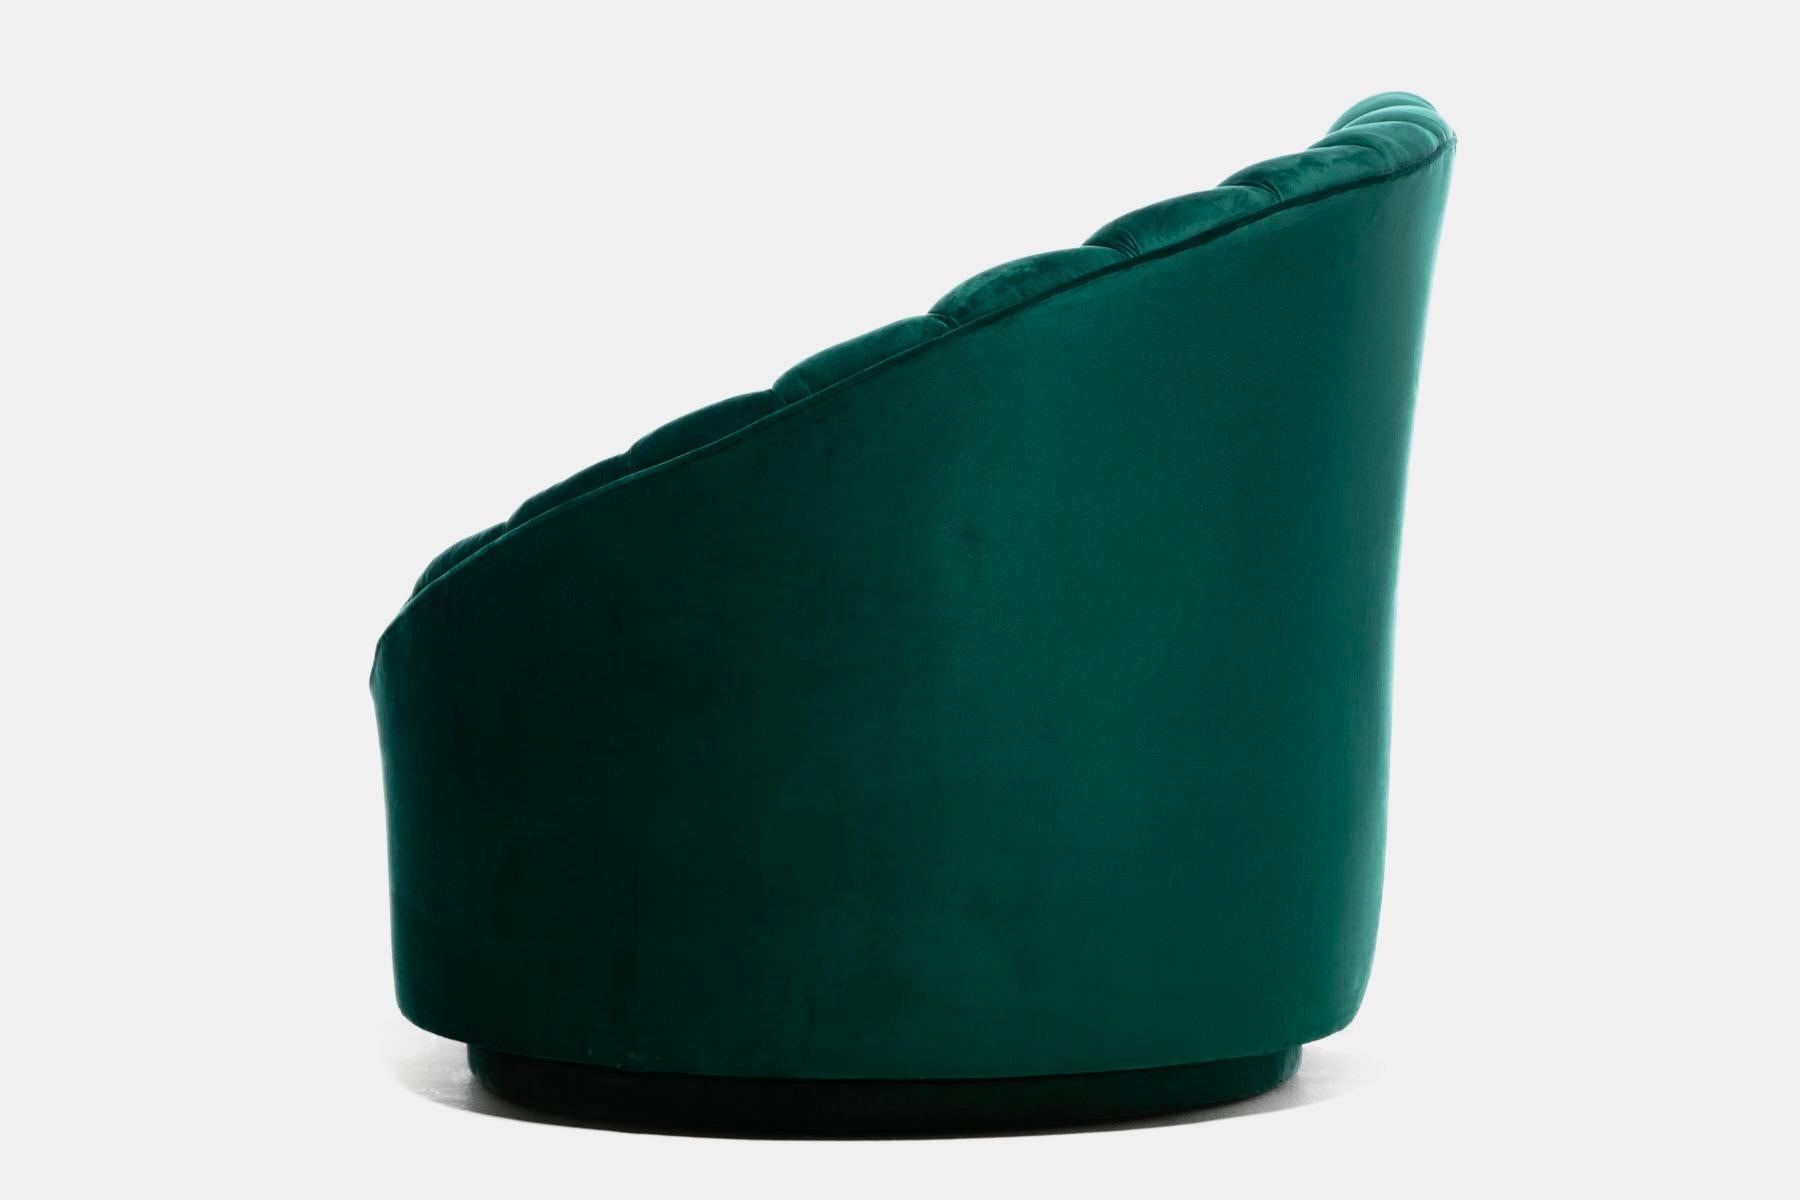 Hollywood Regency Glamorous Asymmetrical Swivel Chairs in Emerald Green Velvet For Sale 5